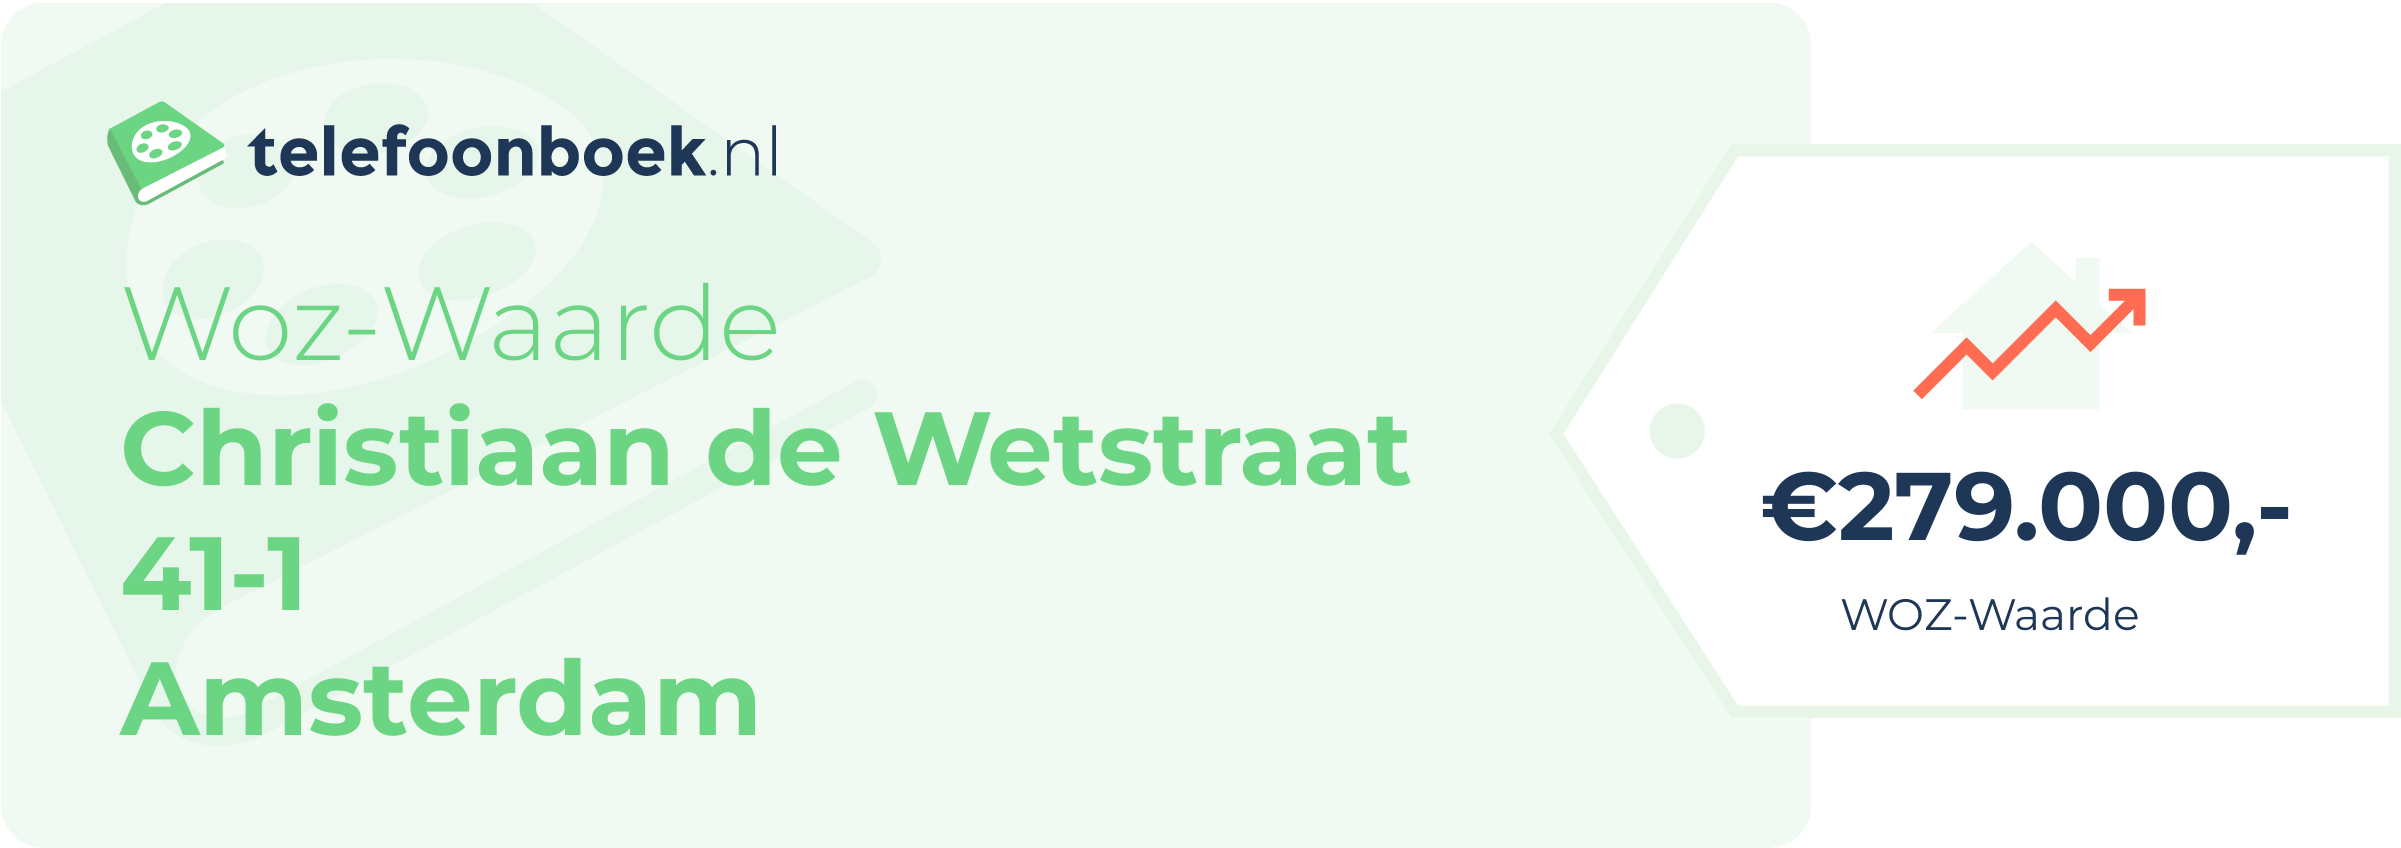 WOZ-waarde Christiaan De Wetstraat 41-1 Amsterdam